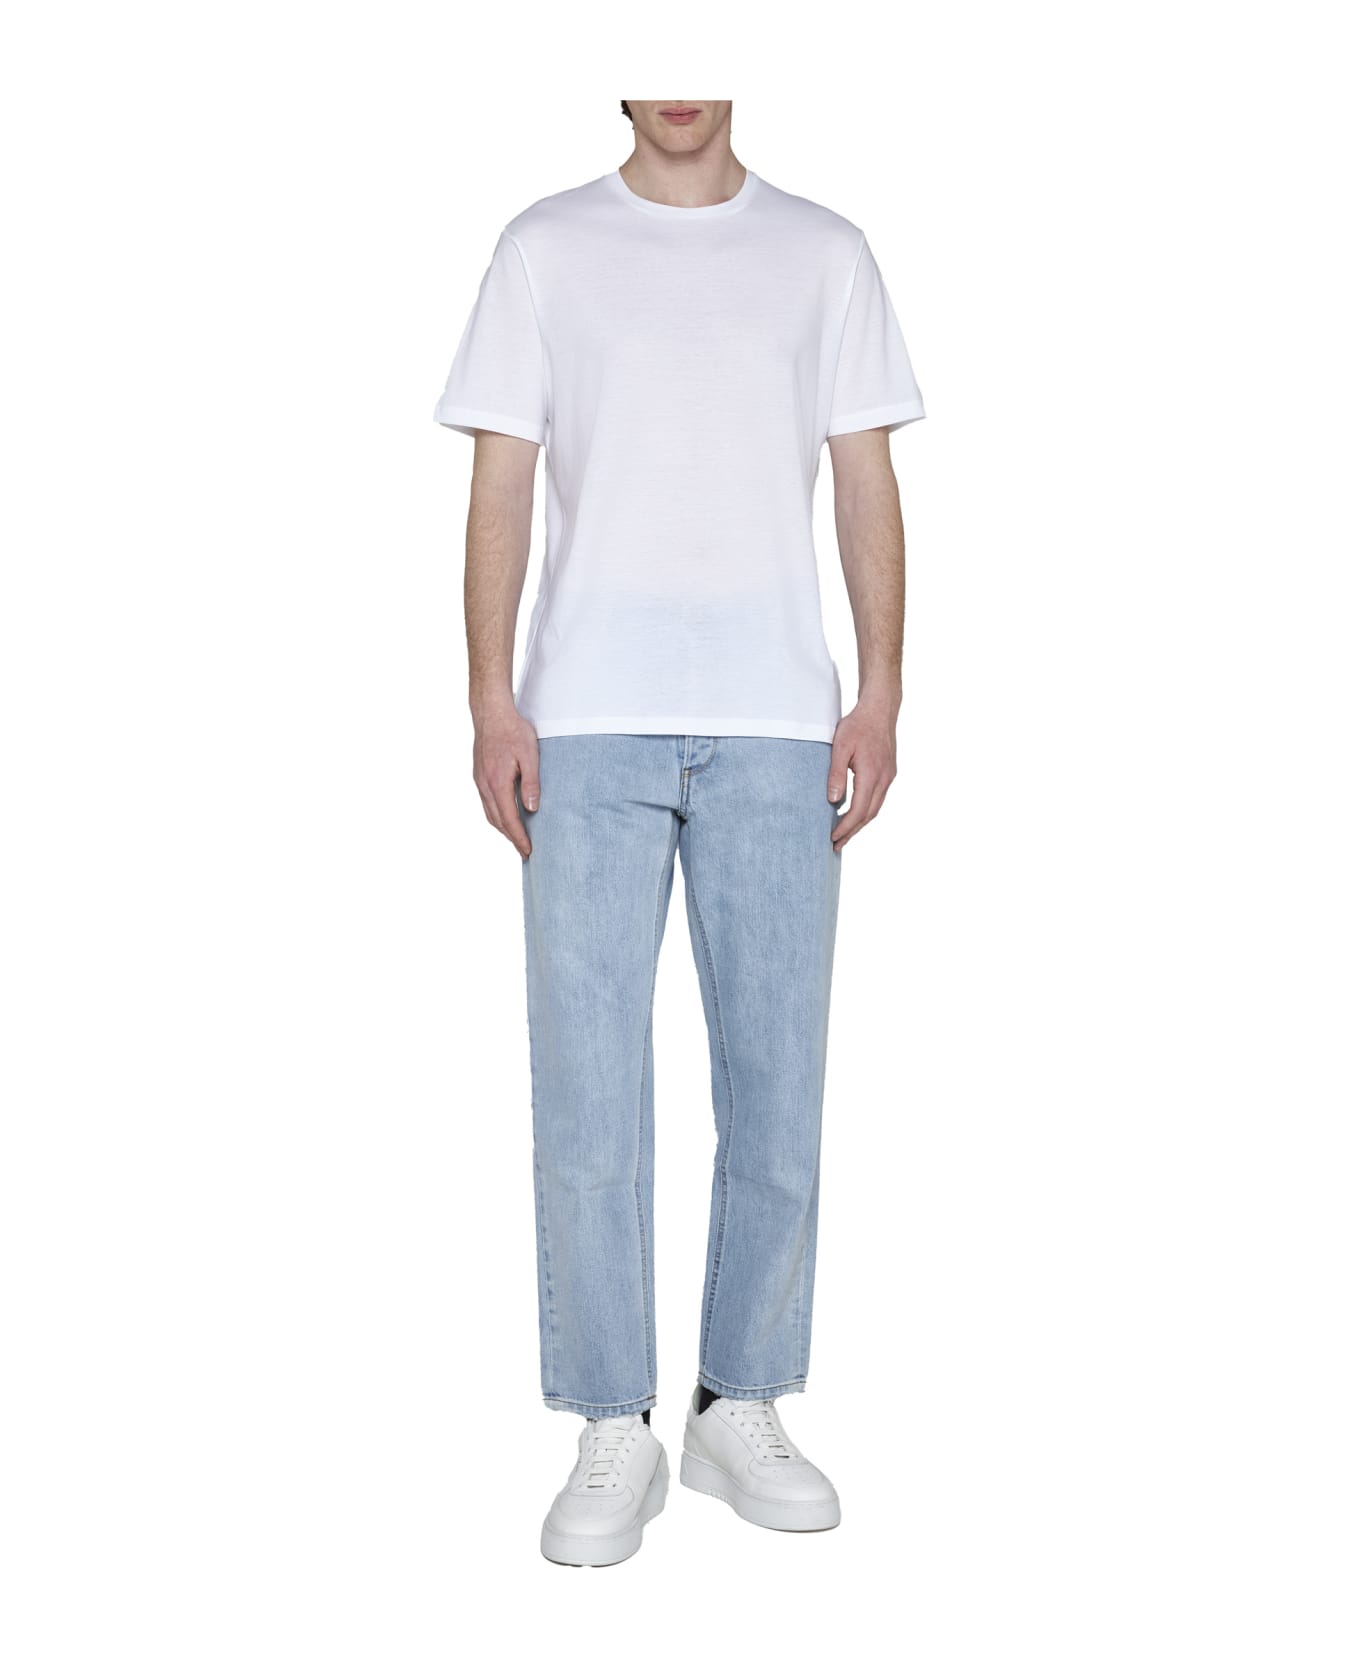 Herno T-Shirt - White